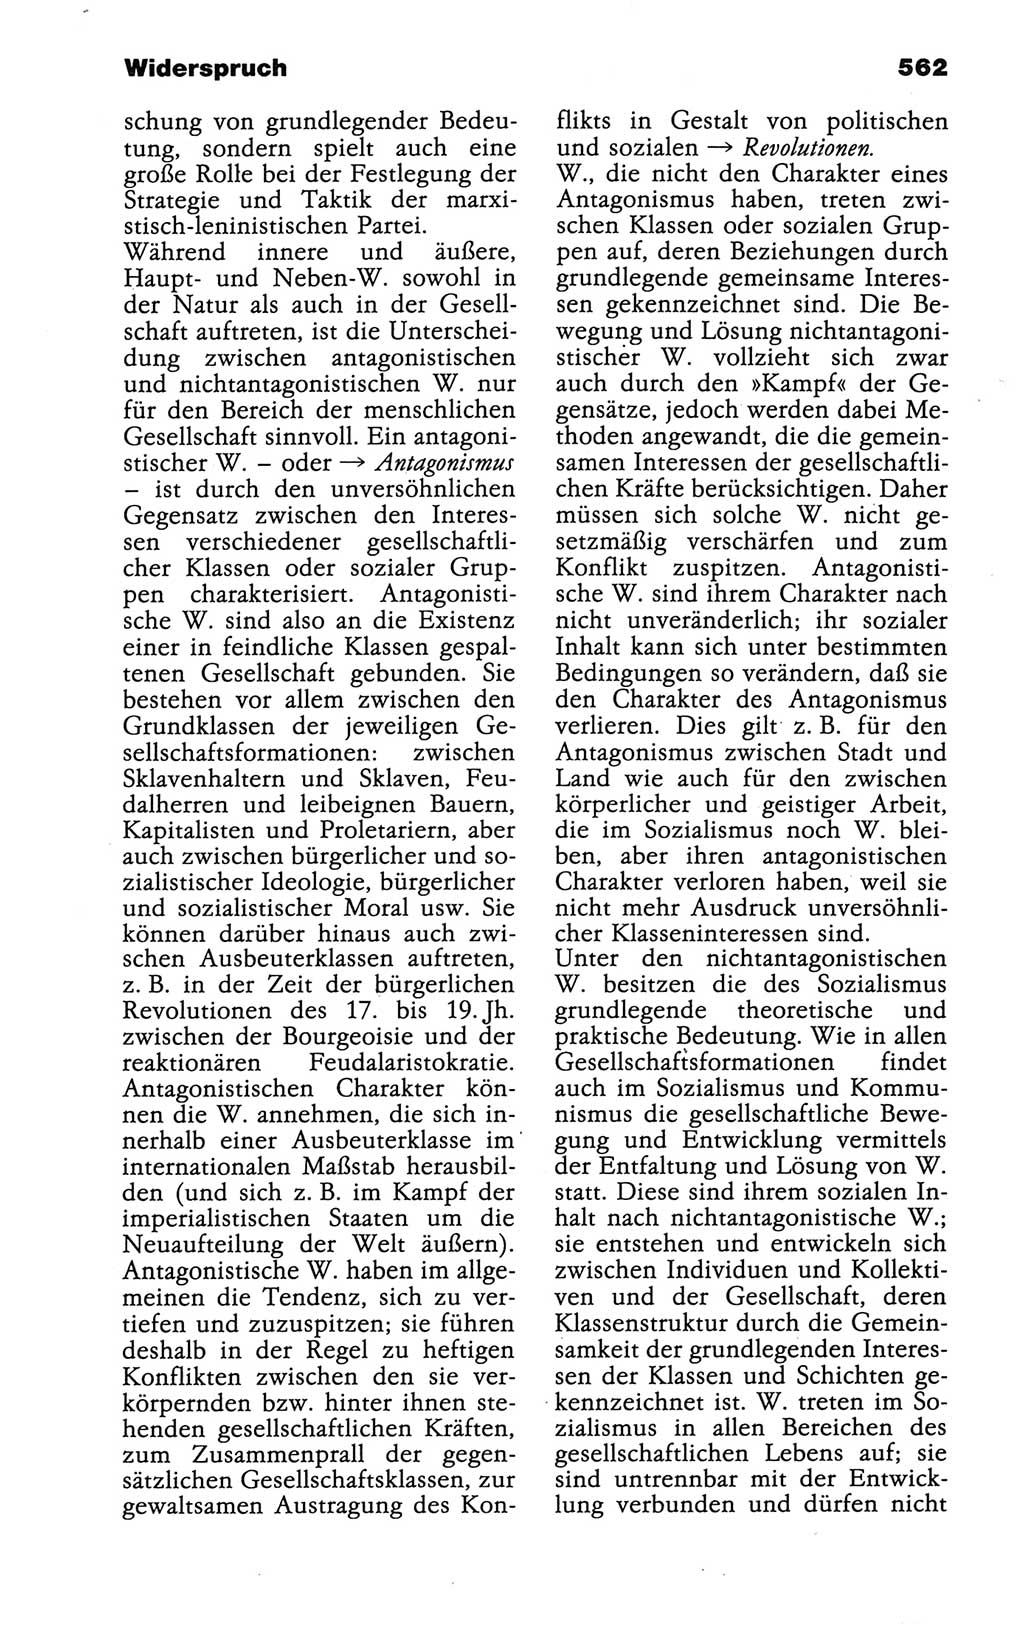 Wörterbuch der marxistisch-leninistischen Philosophie [Deutsche Demokratische Republik (DDR)] 1986, Seite 562 (Wb. ML Phil. DDR 1986, S. 562)